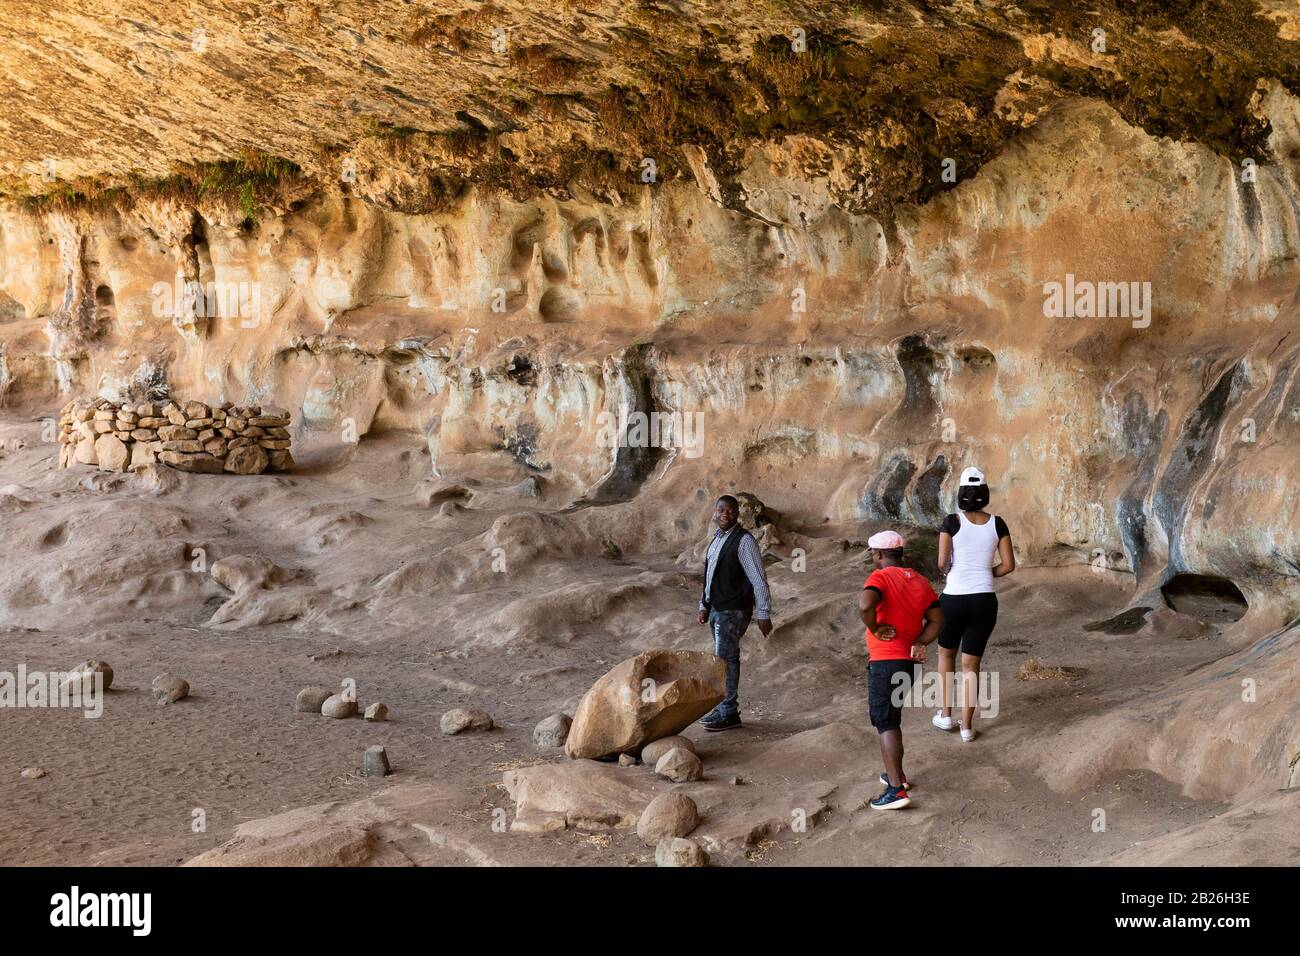 Gente que mira el arte rupestre en la cueva de Liphofung, Lesotho Foto de stock